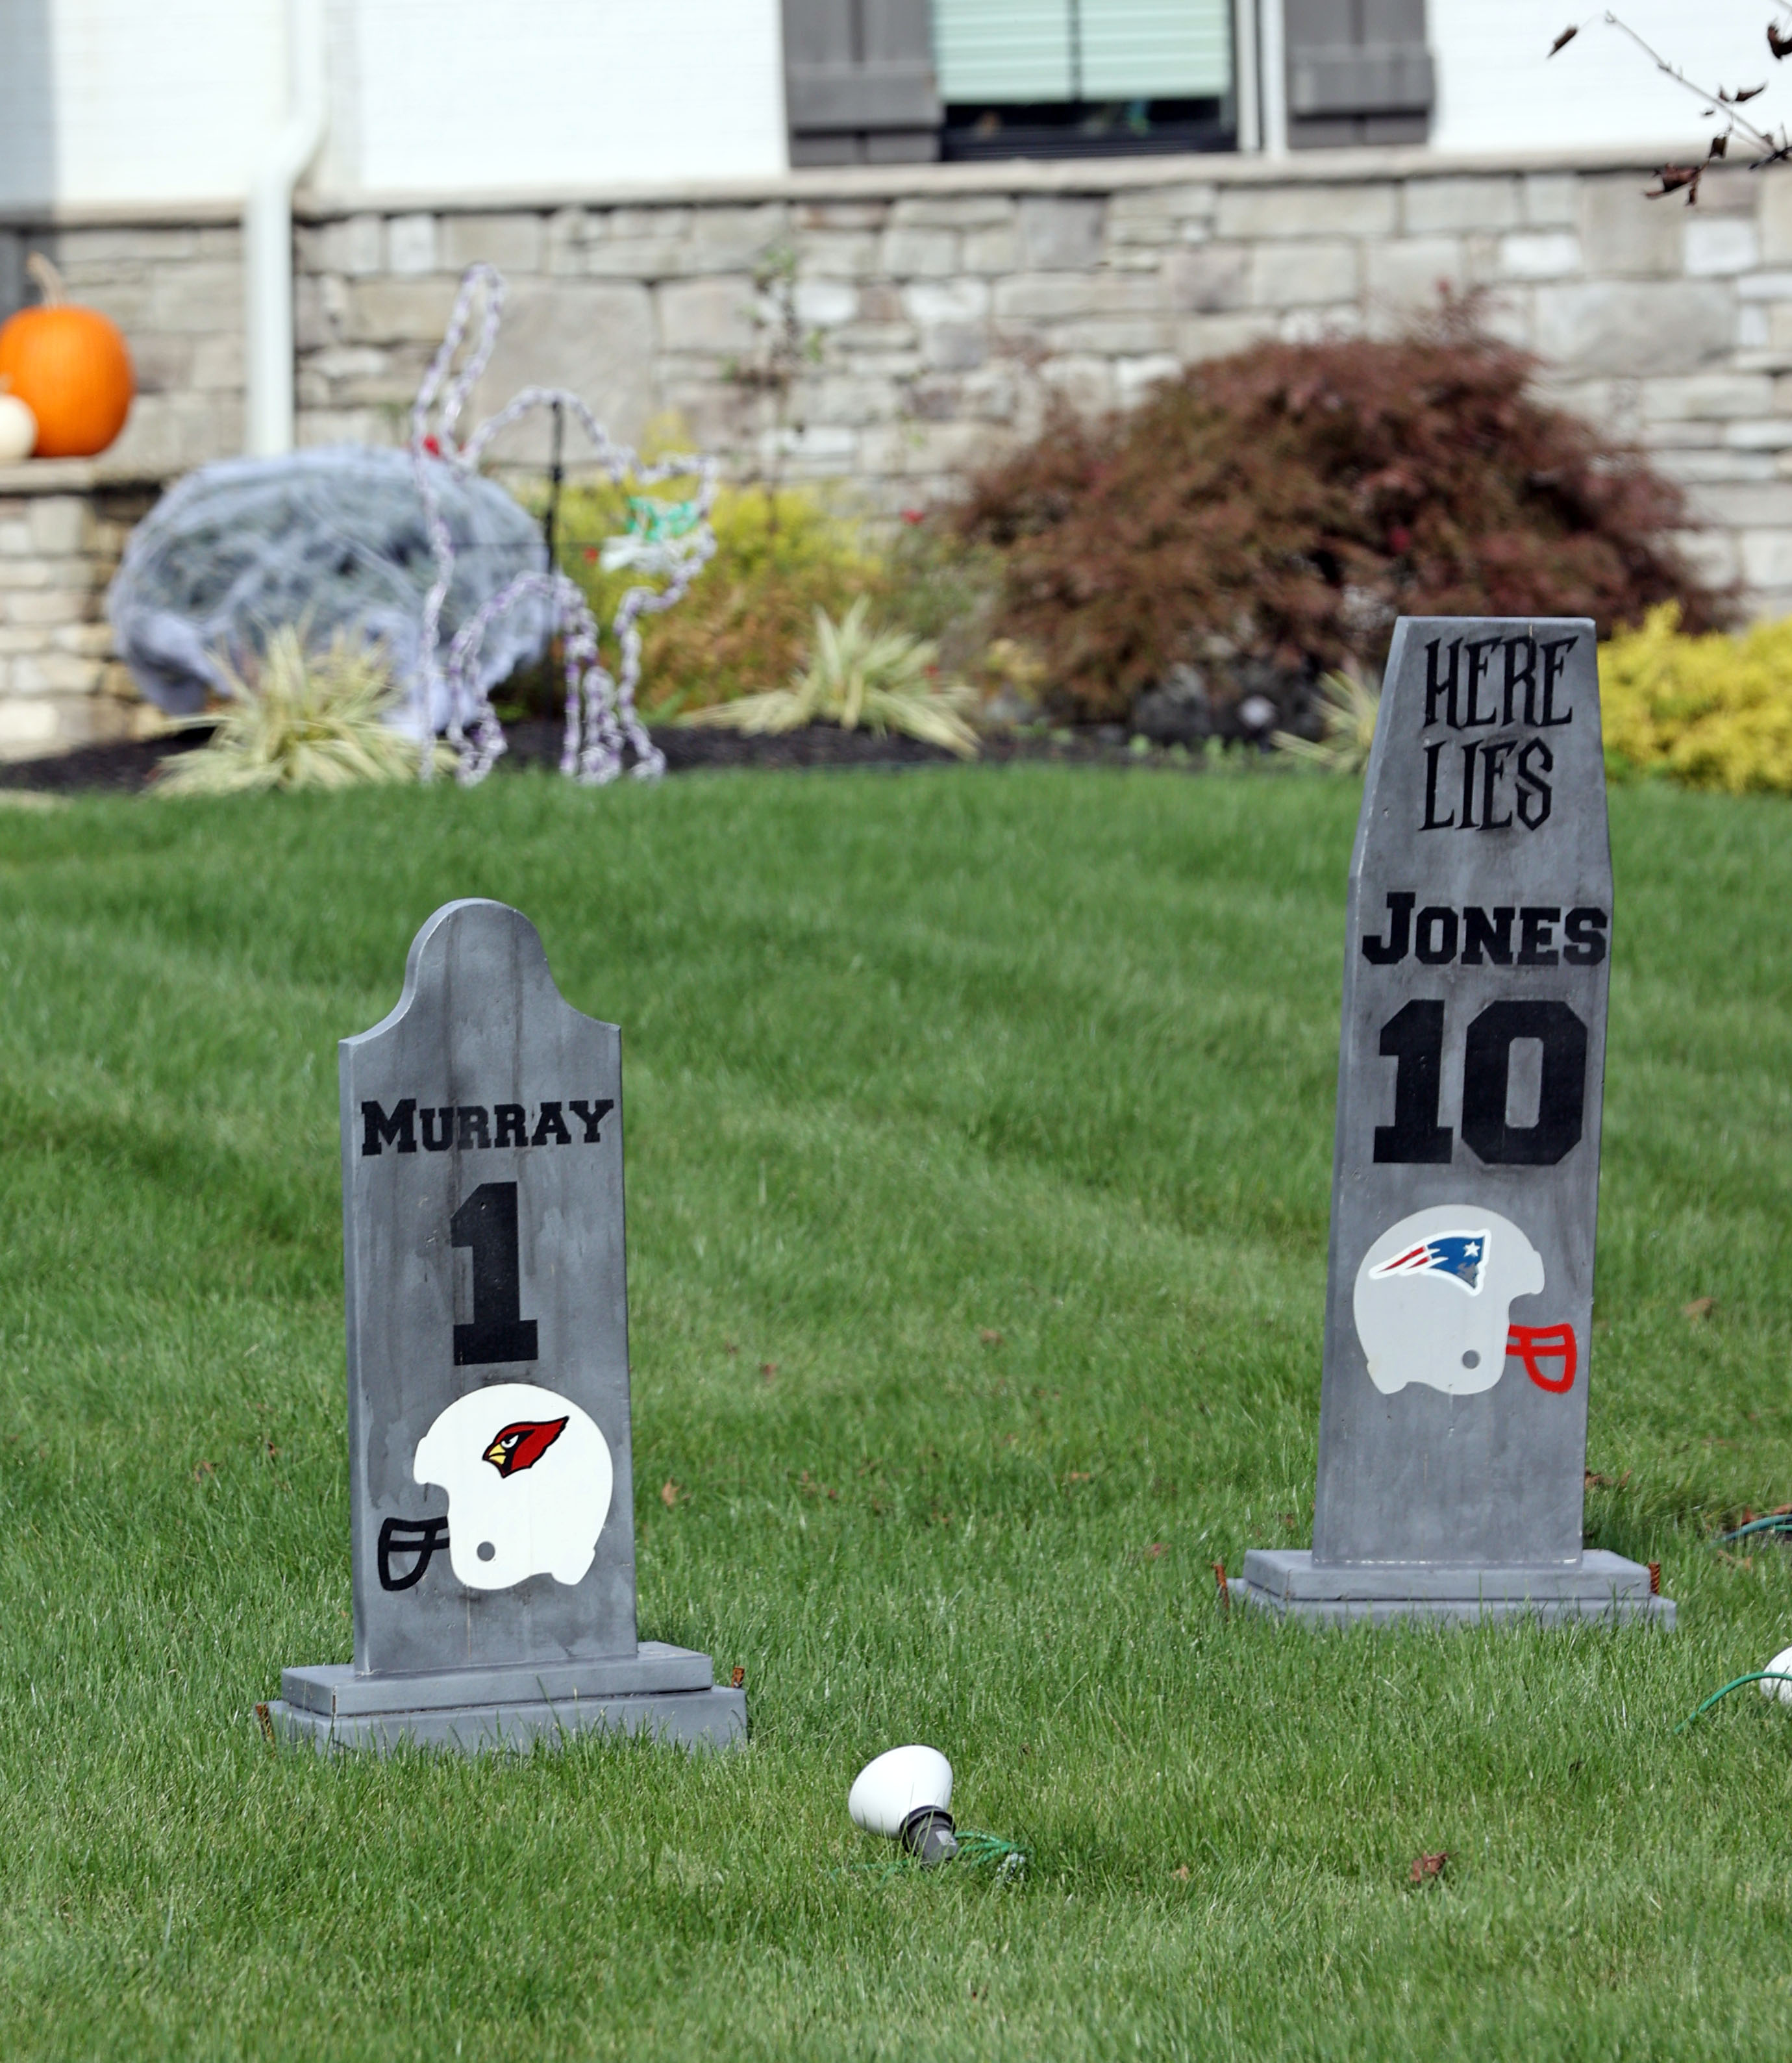 NFL Star Myles Garrett Trolls QBs With Halloween Decorations